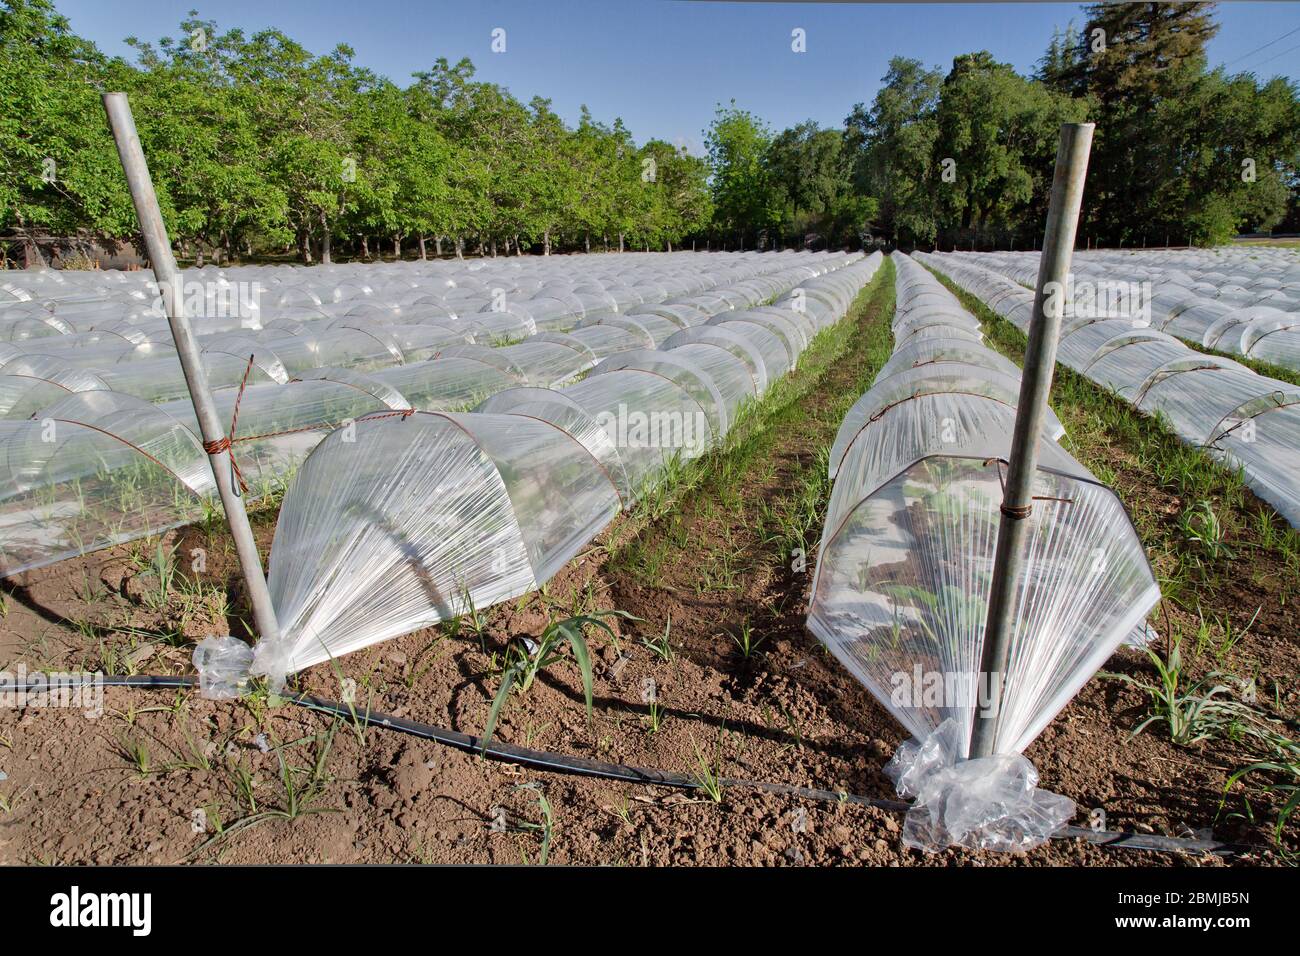 https://c8.alamy.com/compes/2bmjb5n/hileras-de-mini-invernaderos-propagando-semillas-vegetales-producto-plastico-transparente-ventilado-2bmjb5n.jpg